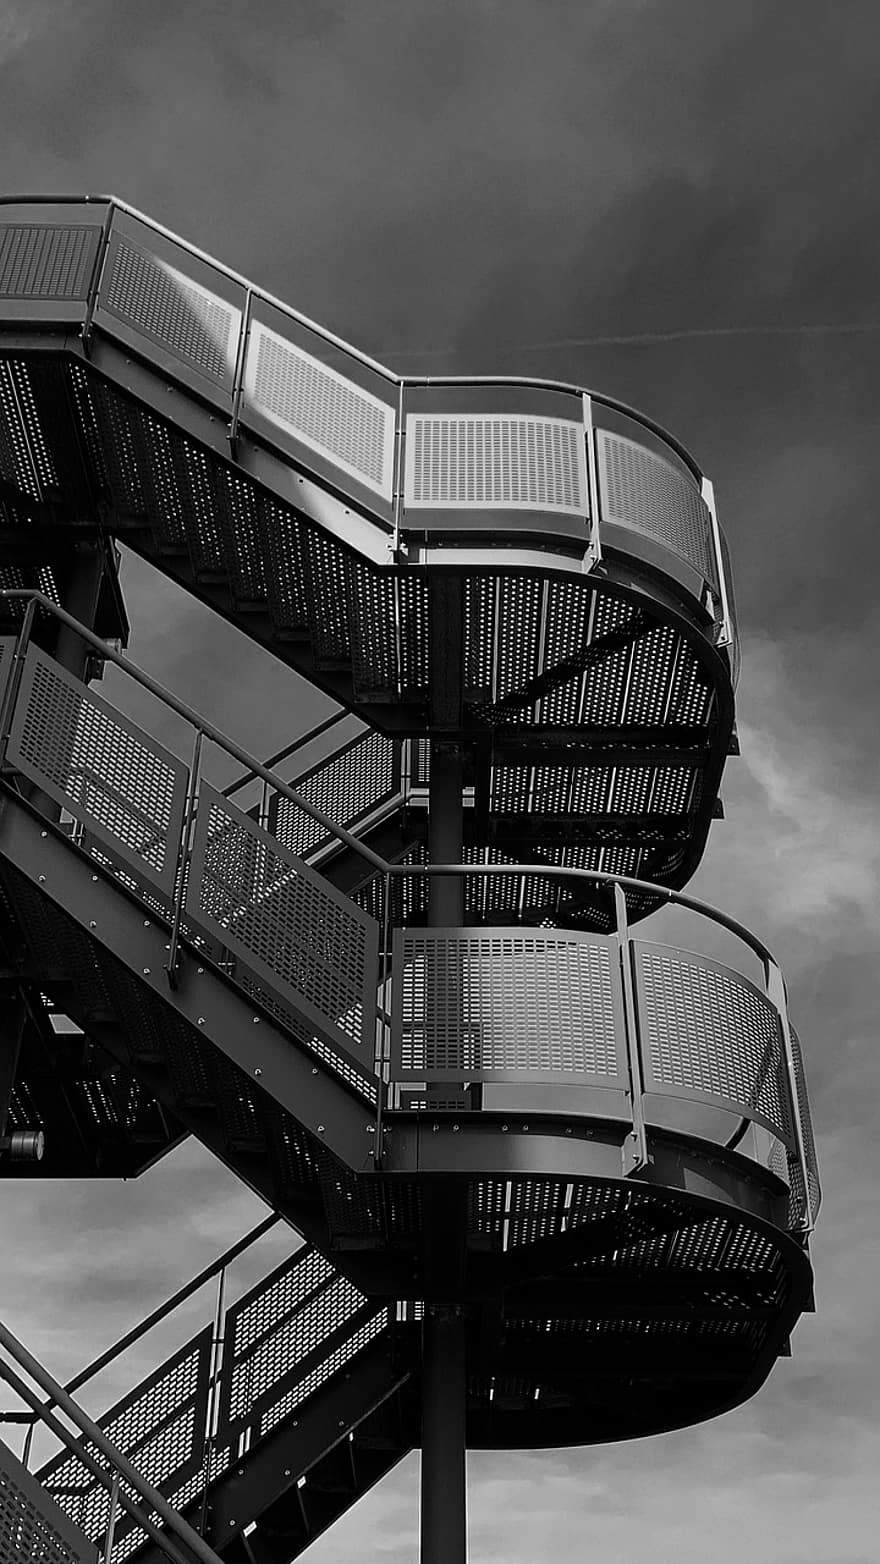 escalera, edificio, arquitectura, hueco de escalera, pasos, acero, metal, en blanco y negro, estructura construida, moderno, exterior del edificio